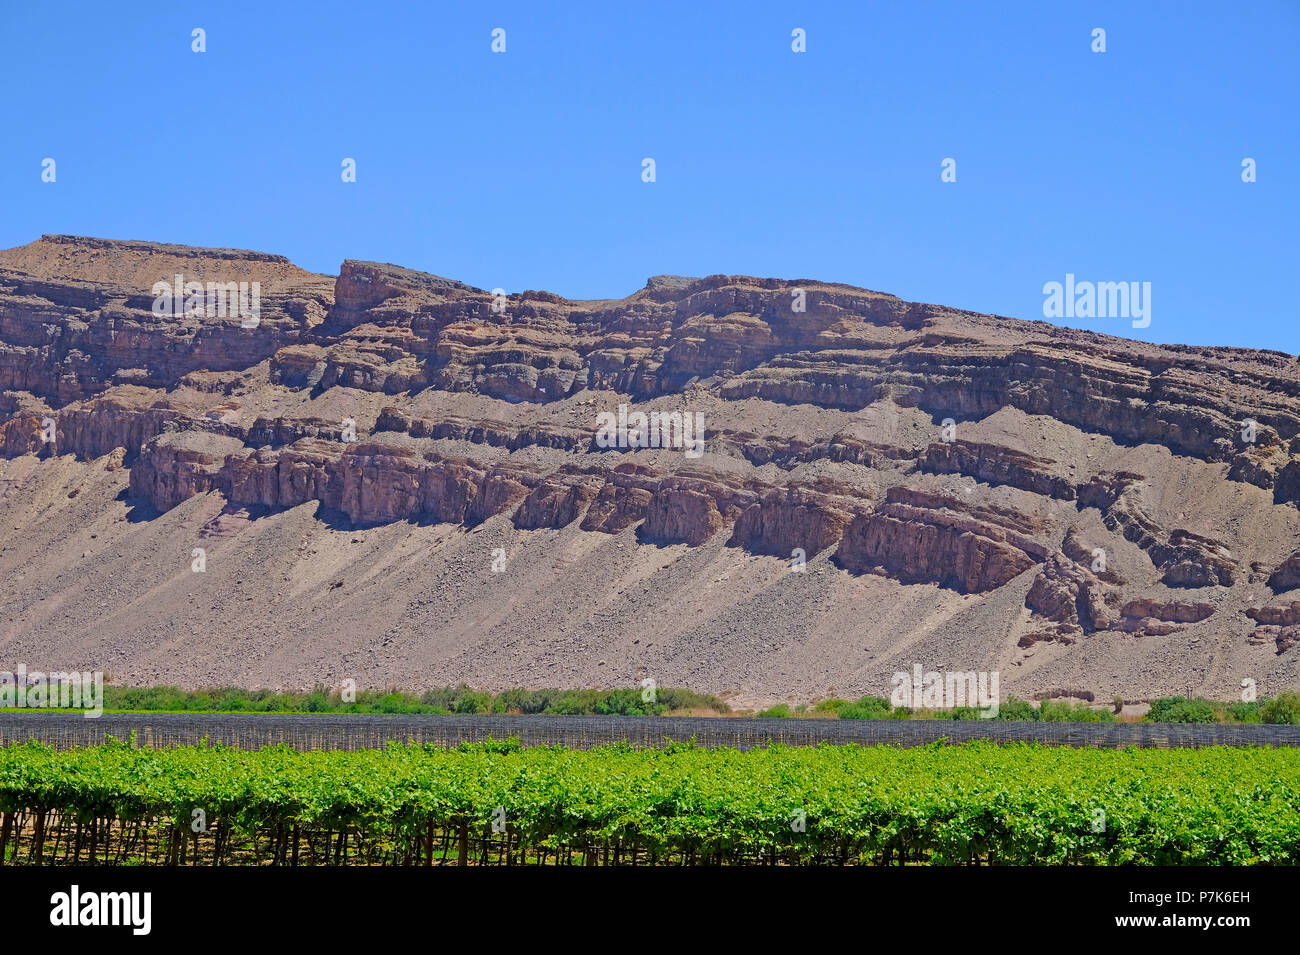 Weinbau am Oranje schließen Noordoewer, stark erodierte, malerische Berge auf der gegenüberliegenden Seite in Südafrika, Namibia, grenzort Noordoewer Stockfoto